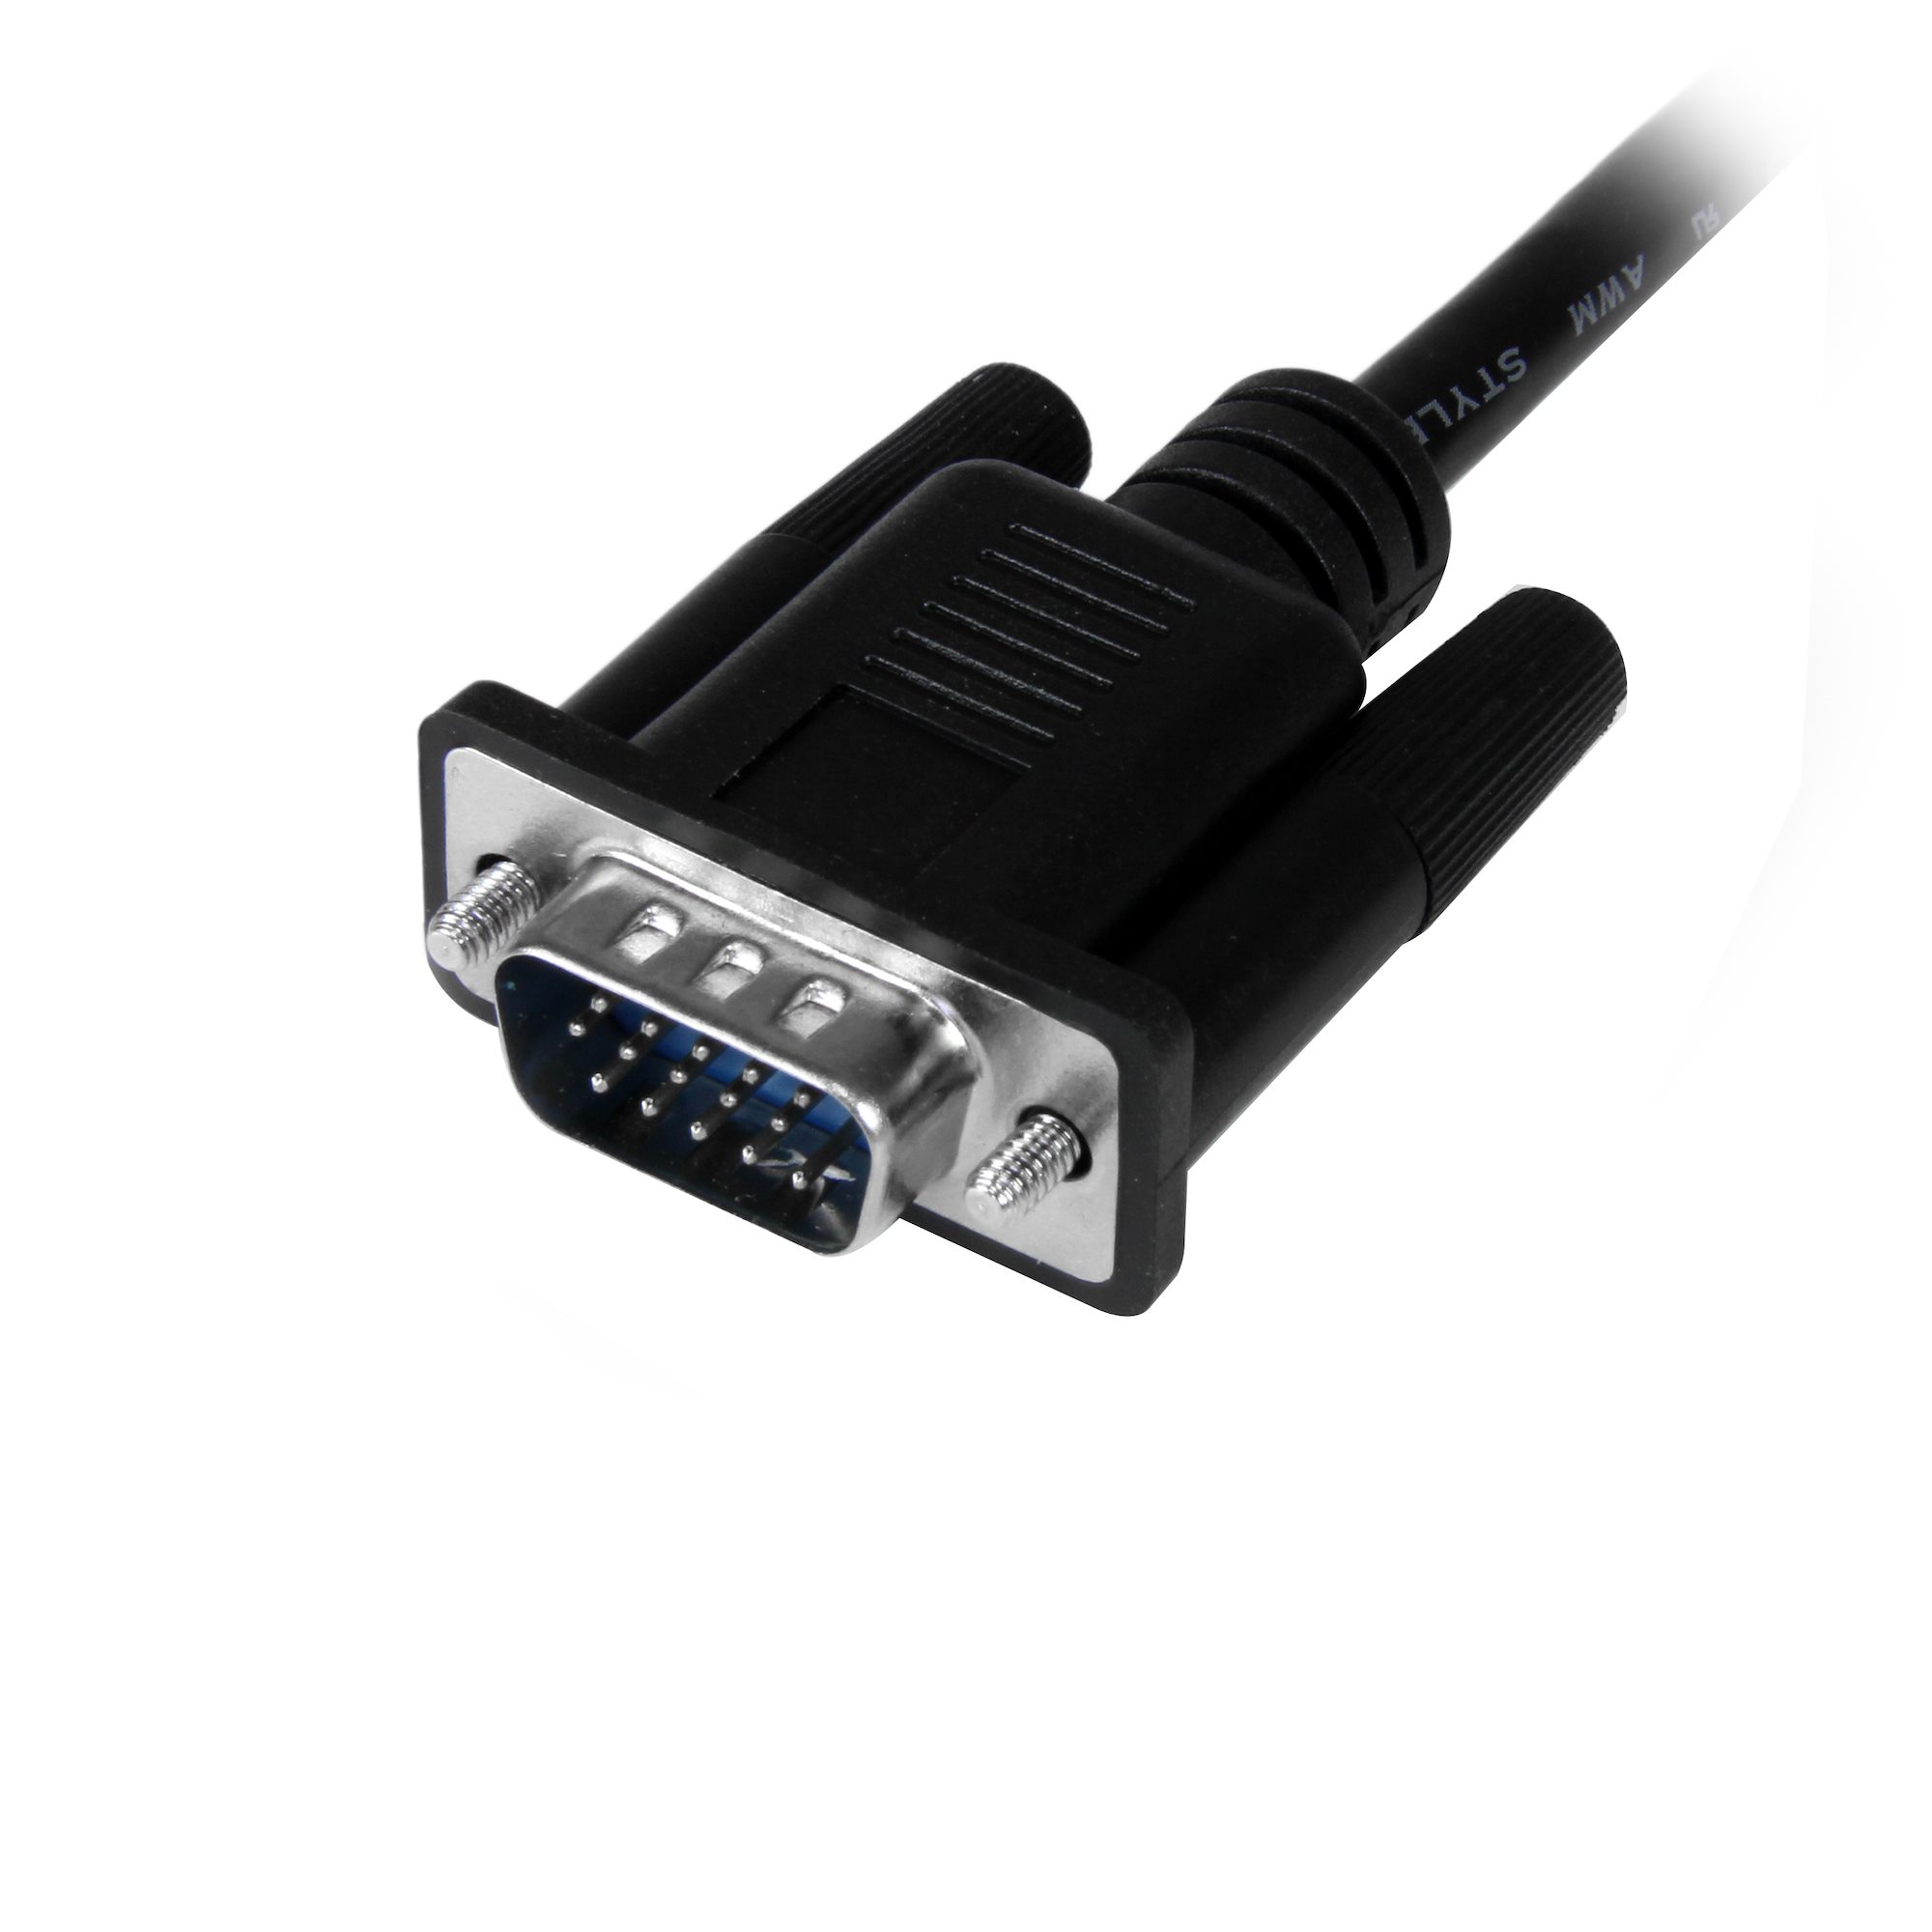 品揃え豊富で CableDeconn HDMI-VGA DVI HDMI 変換 アダプタ 4in1 多機能ハブ to VGA 